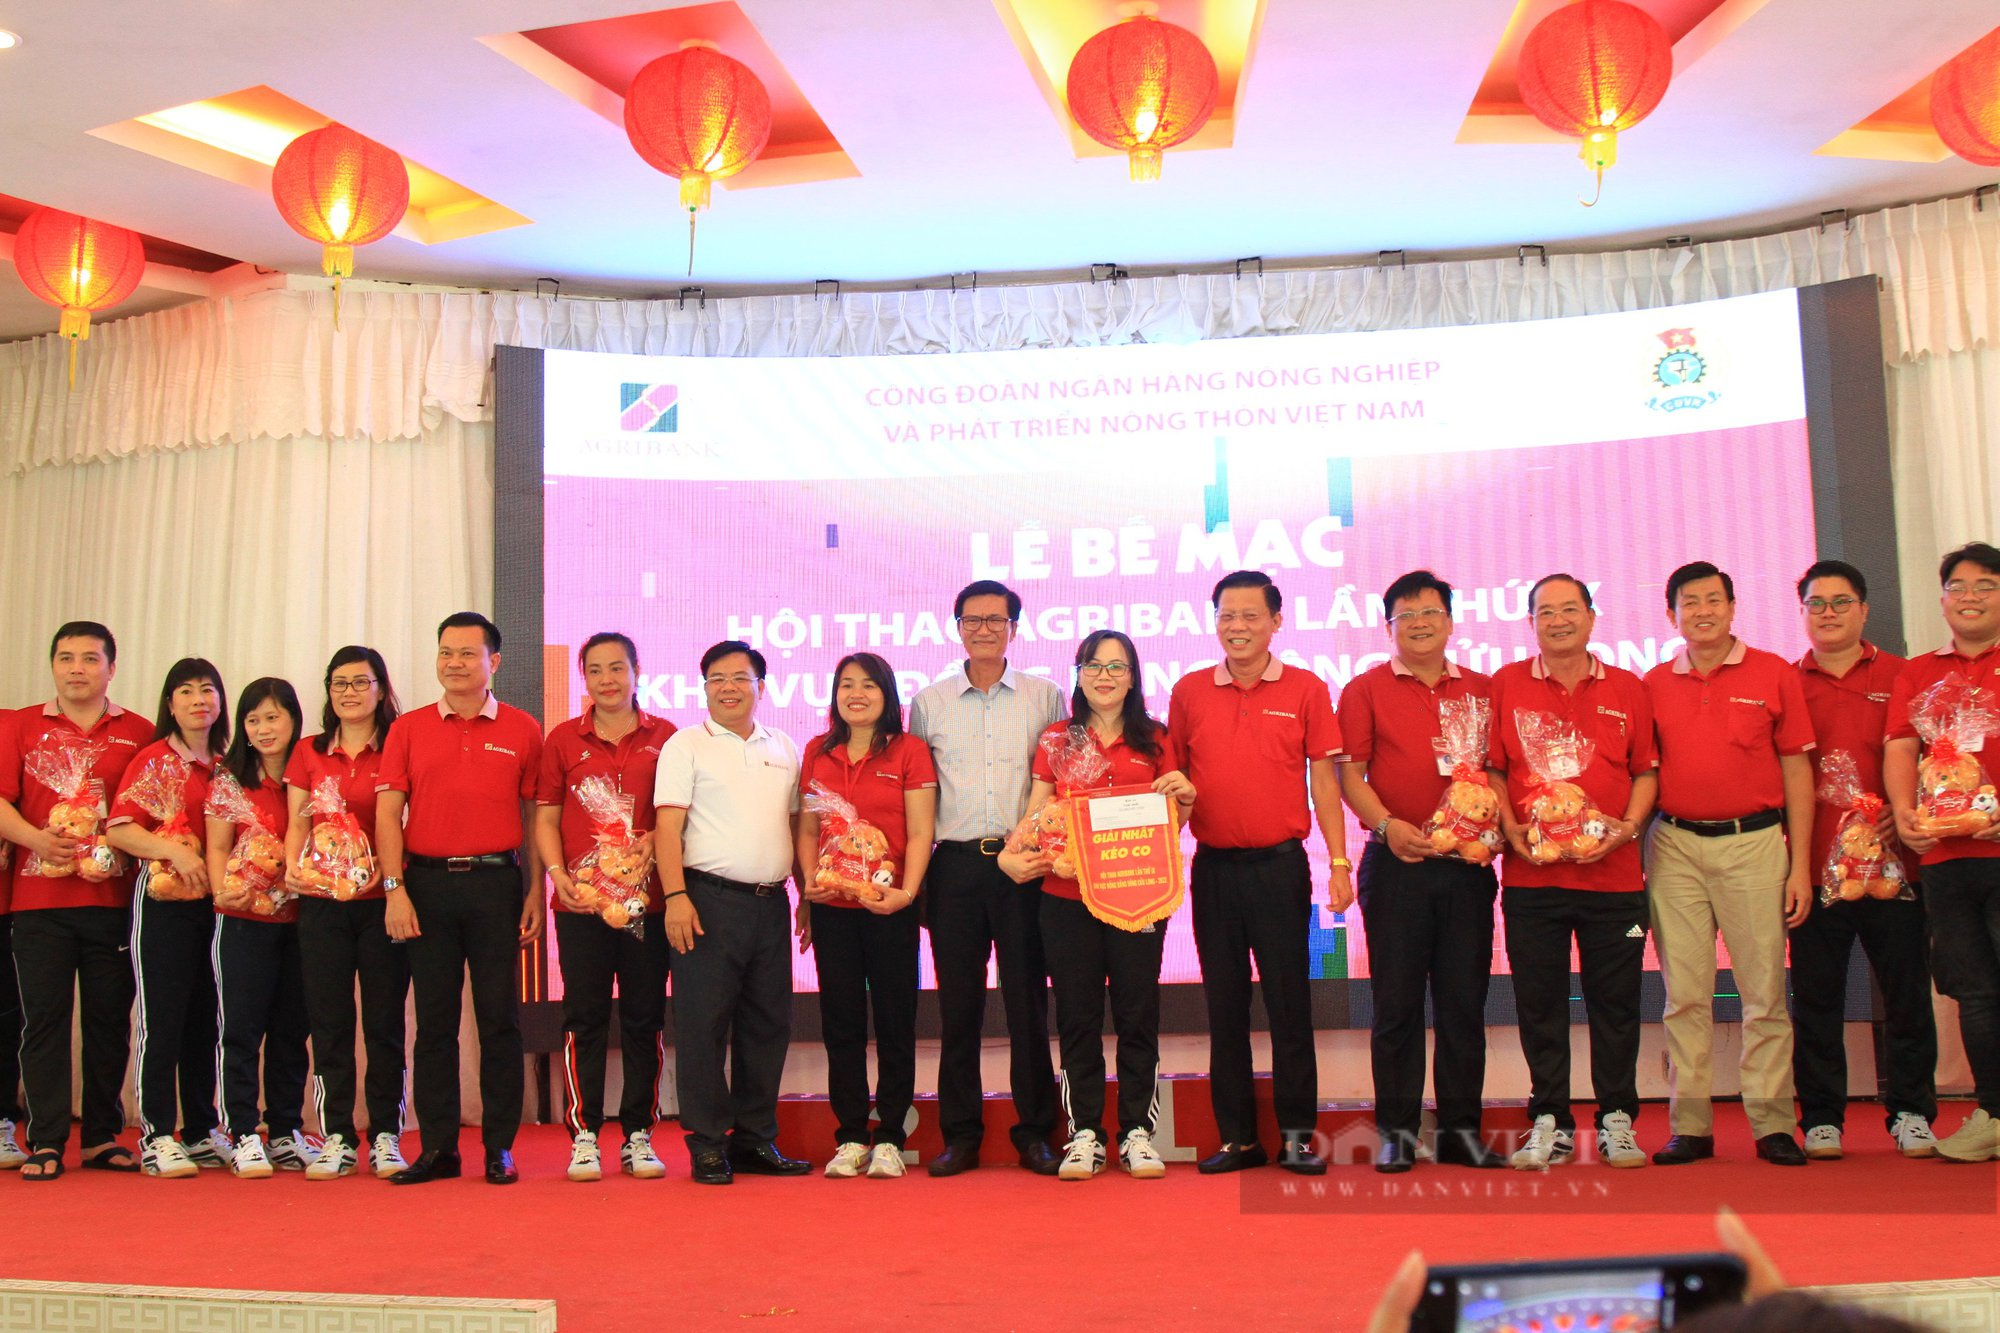 Đoàn Agribank chi nhánh An Giang giành giải Nhất toàn đoàn tại Hội thao Agribank lần thứ IX khu vực ĐBSCL - Ảnh 13.